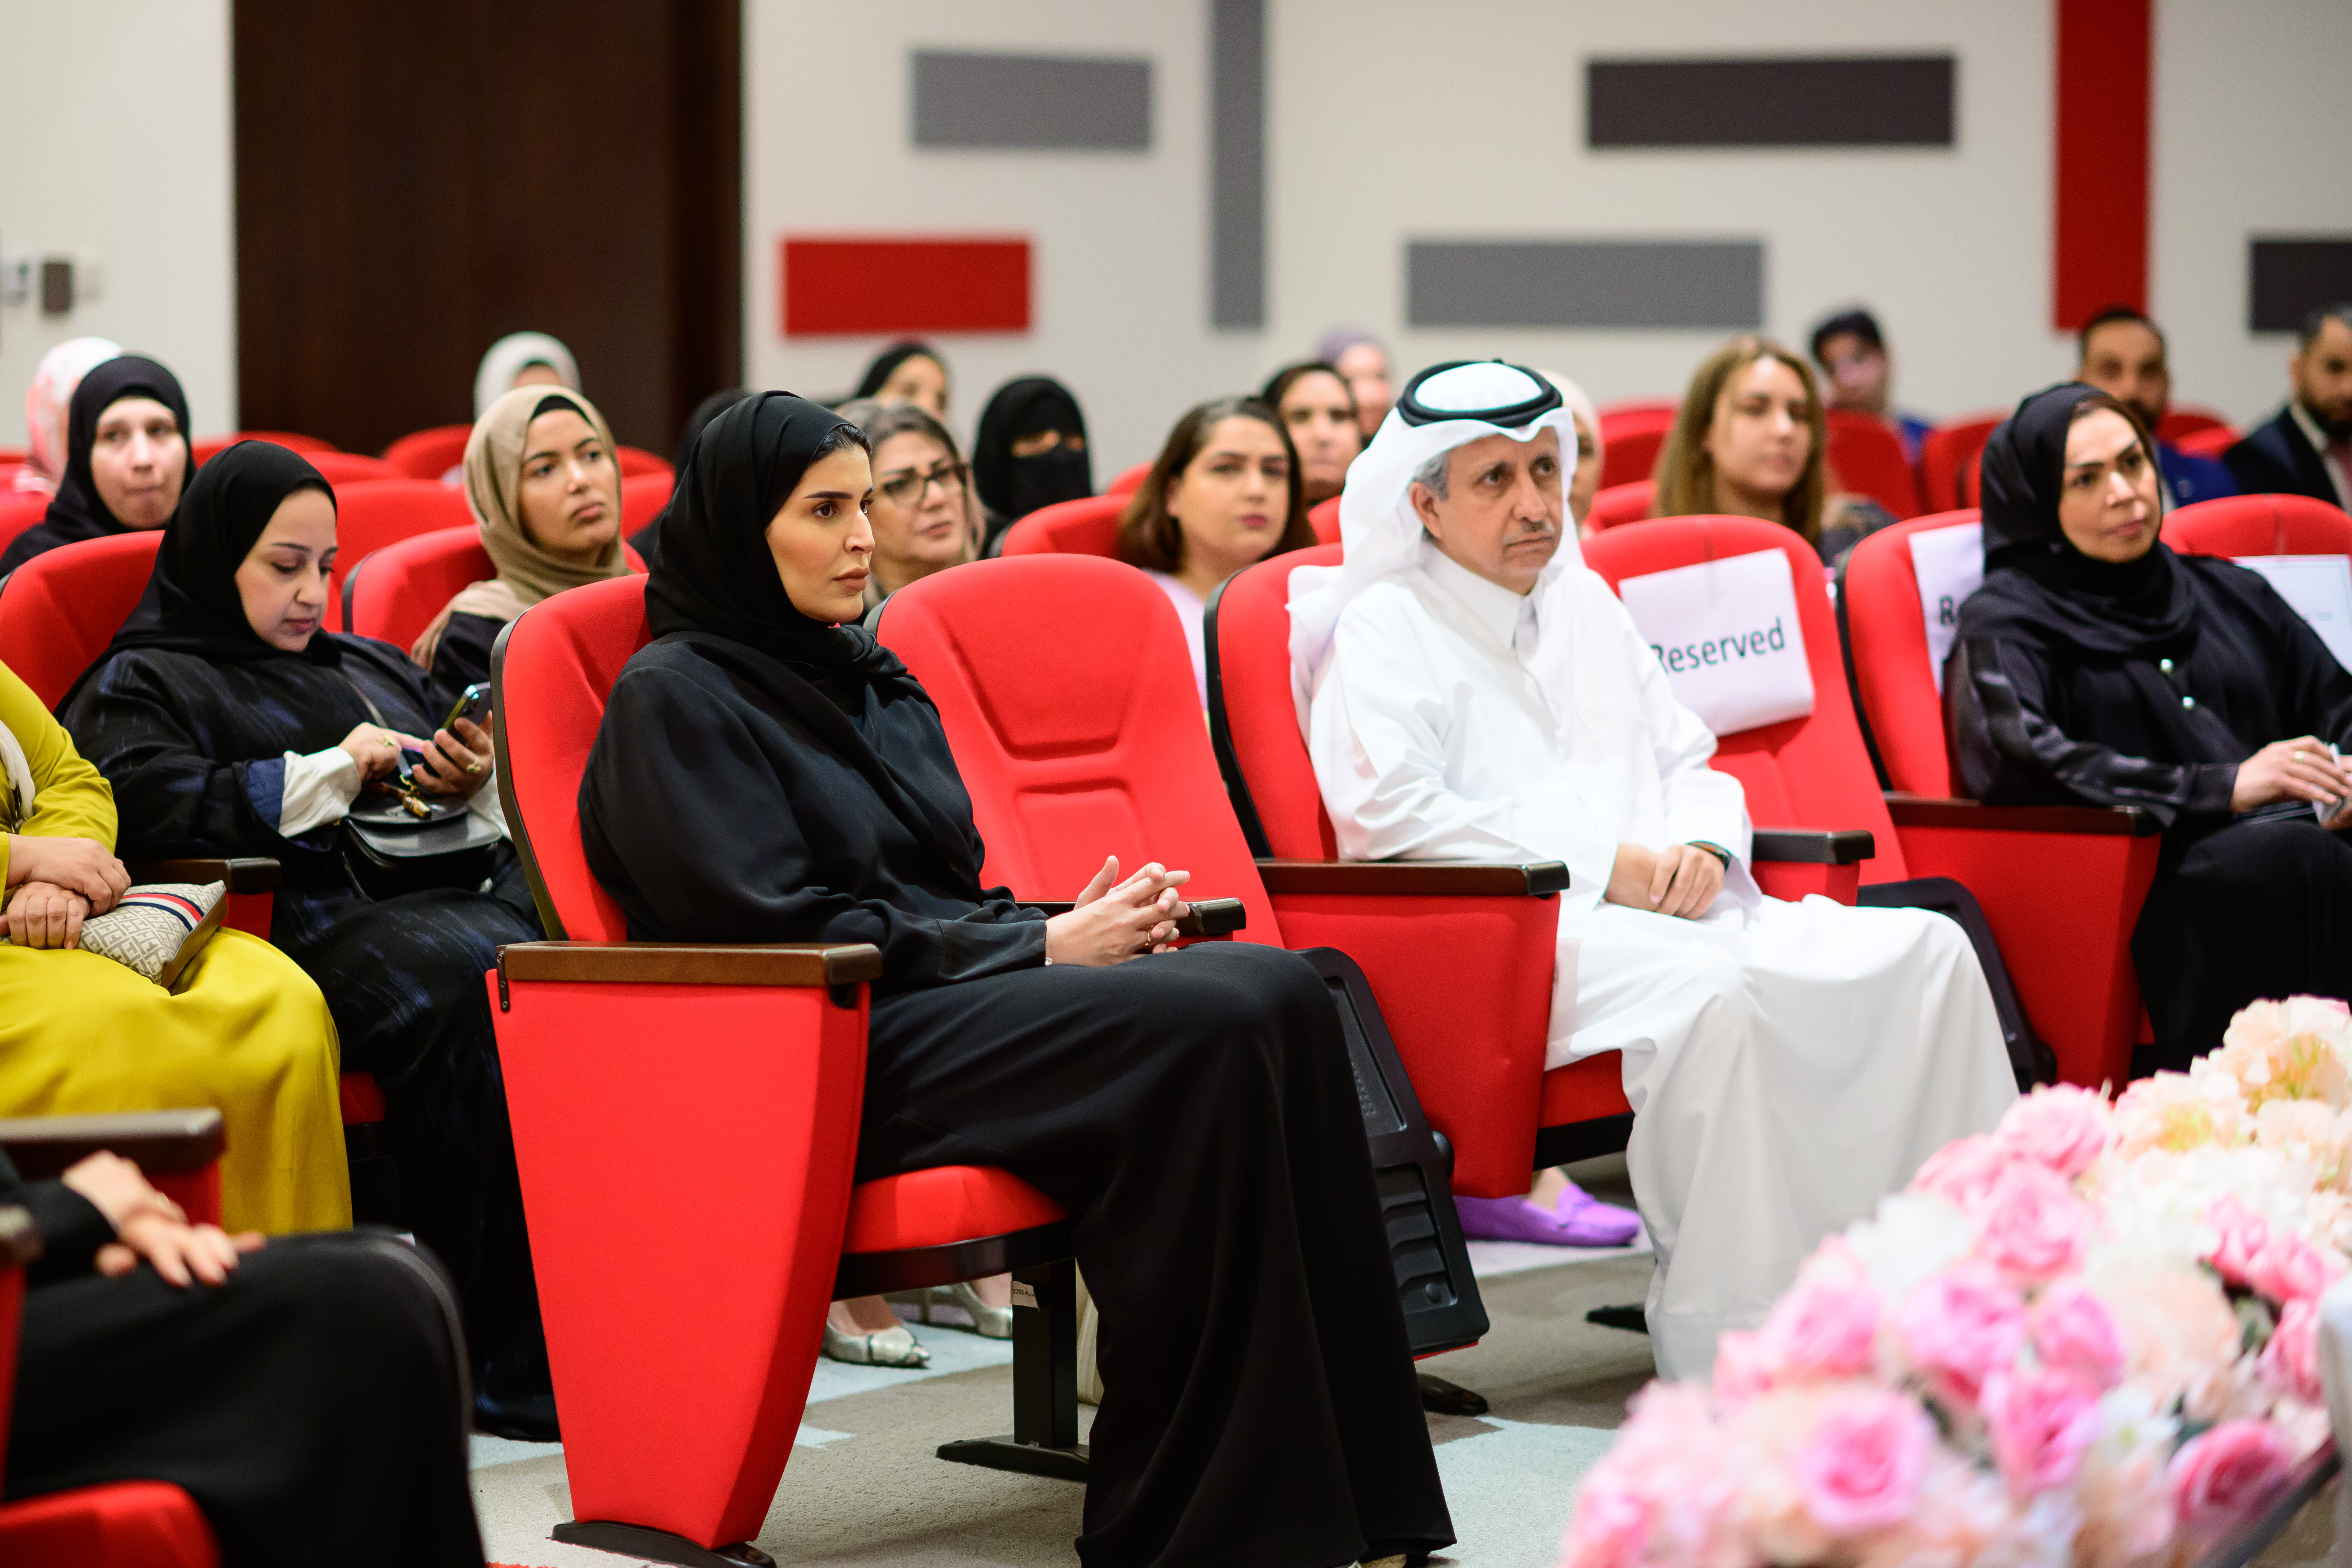 سعادة السيدة مريم بنت علي بن ناصر المسند وزيرة التنمية الاجتماعية والأسرة بزيارة الى الجمعية القطرية للسرطان